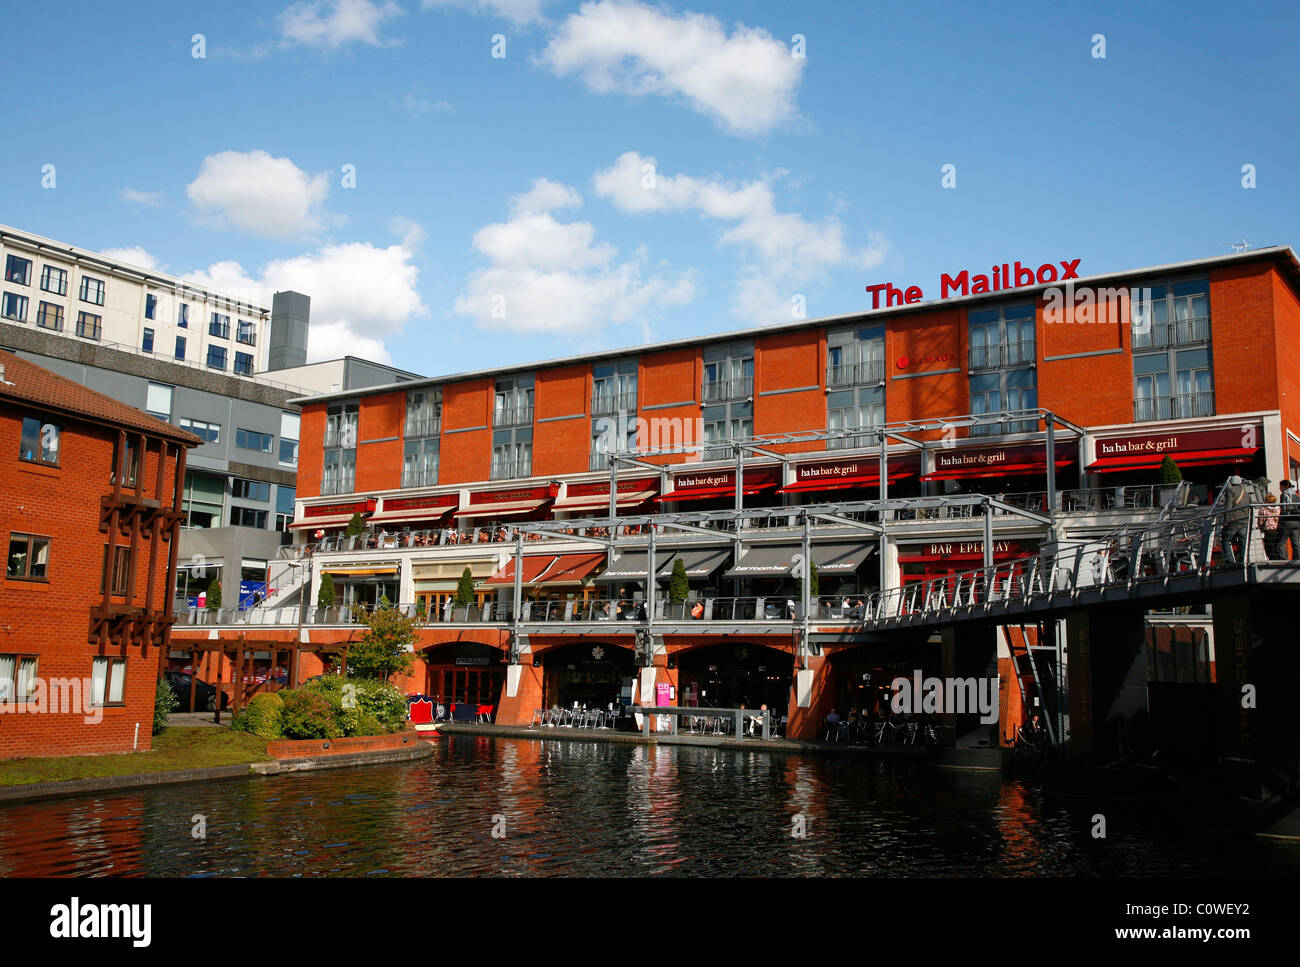 La casella di posta il complesso shopping con molti ristoranti e caffetterie. Birmingham, Inghilterra, Regno Unito. Foto Stock